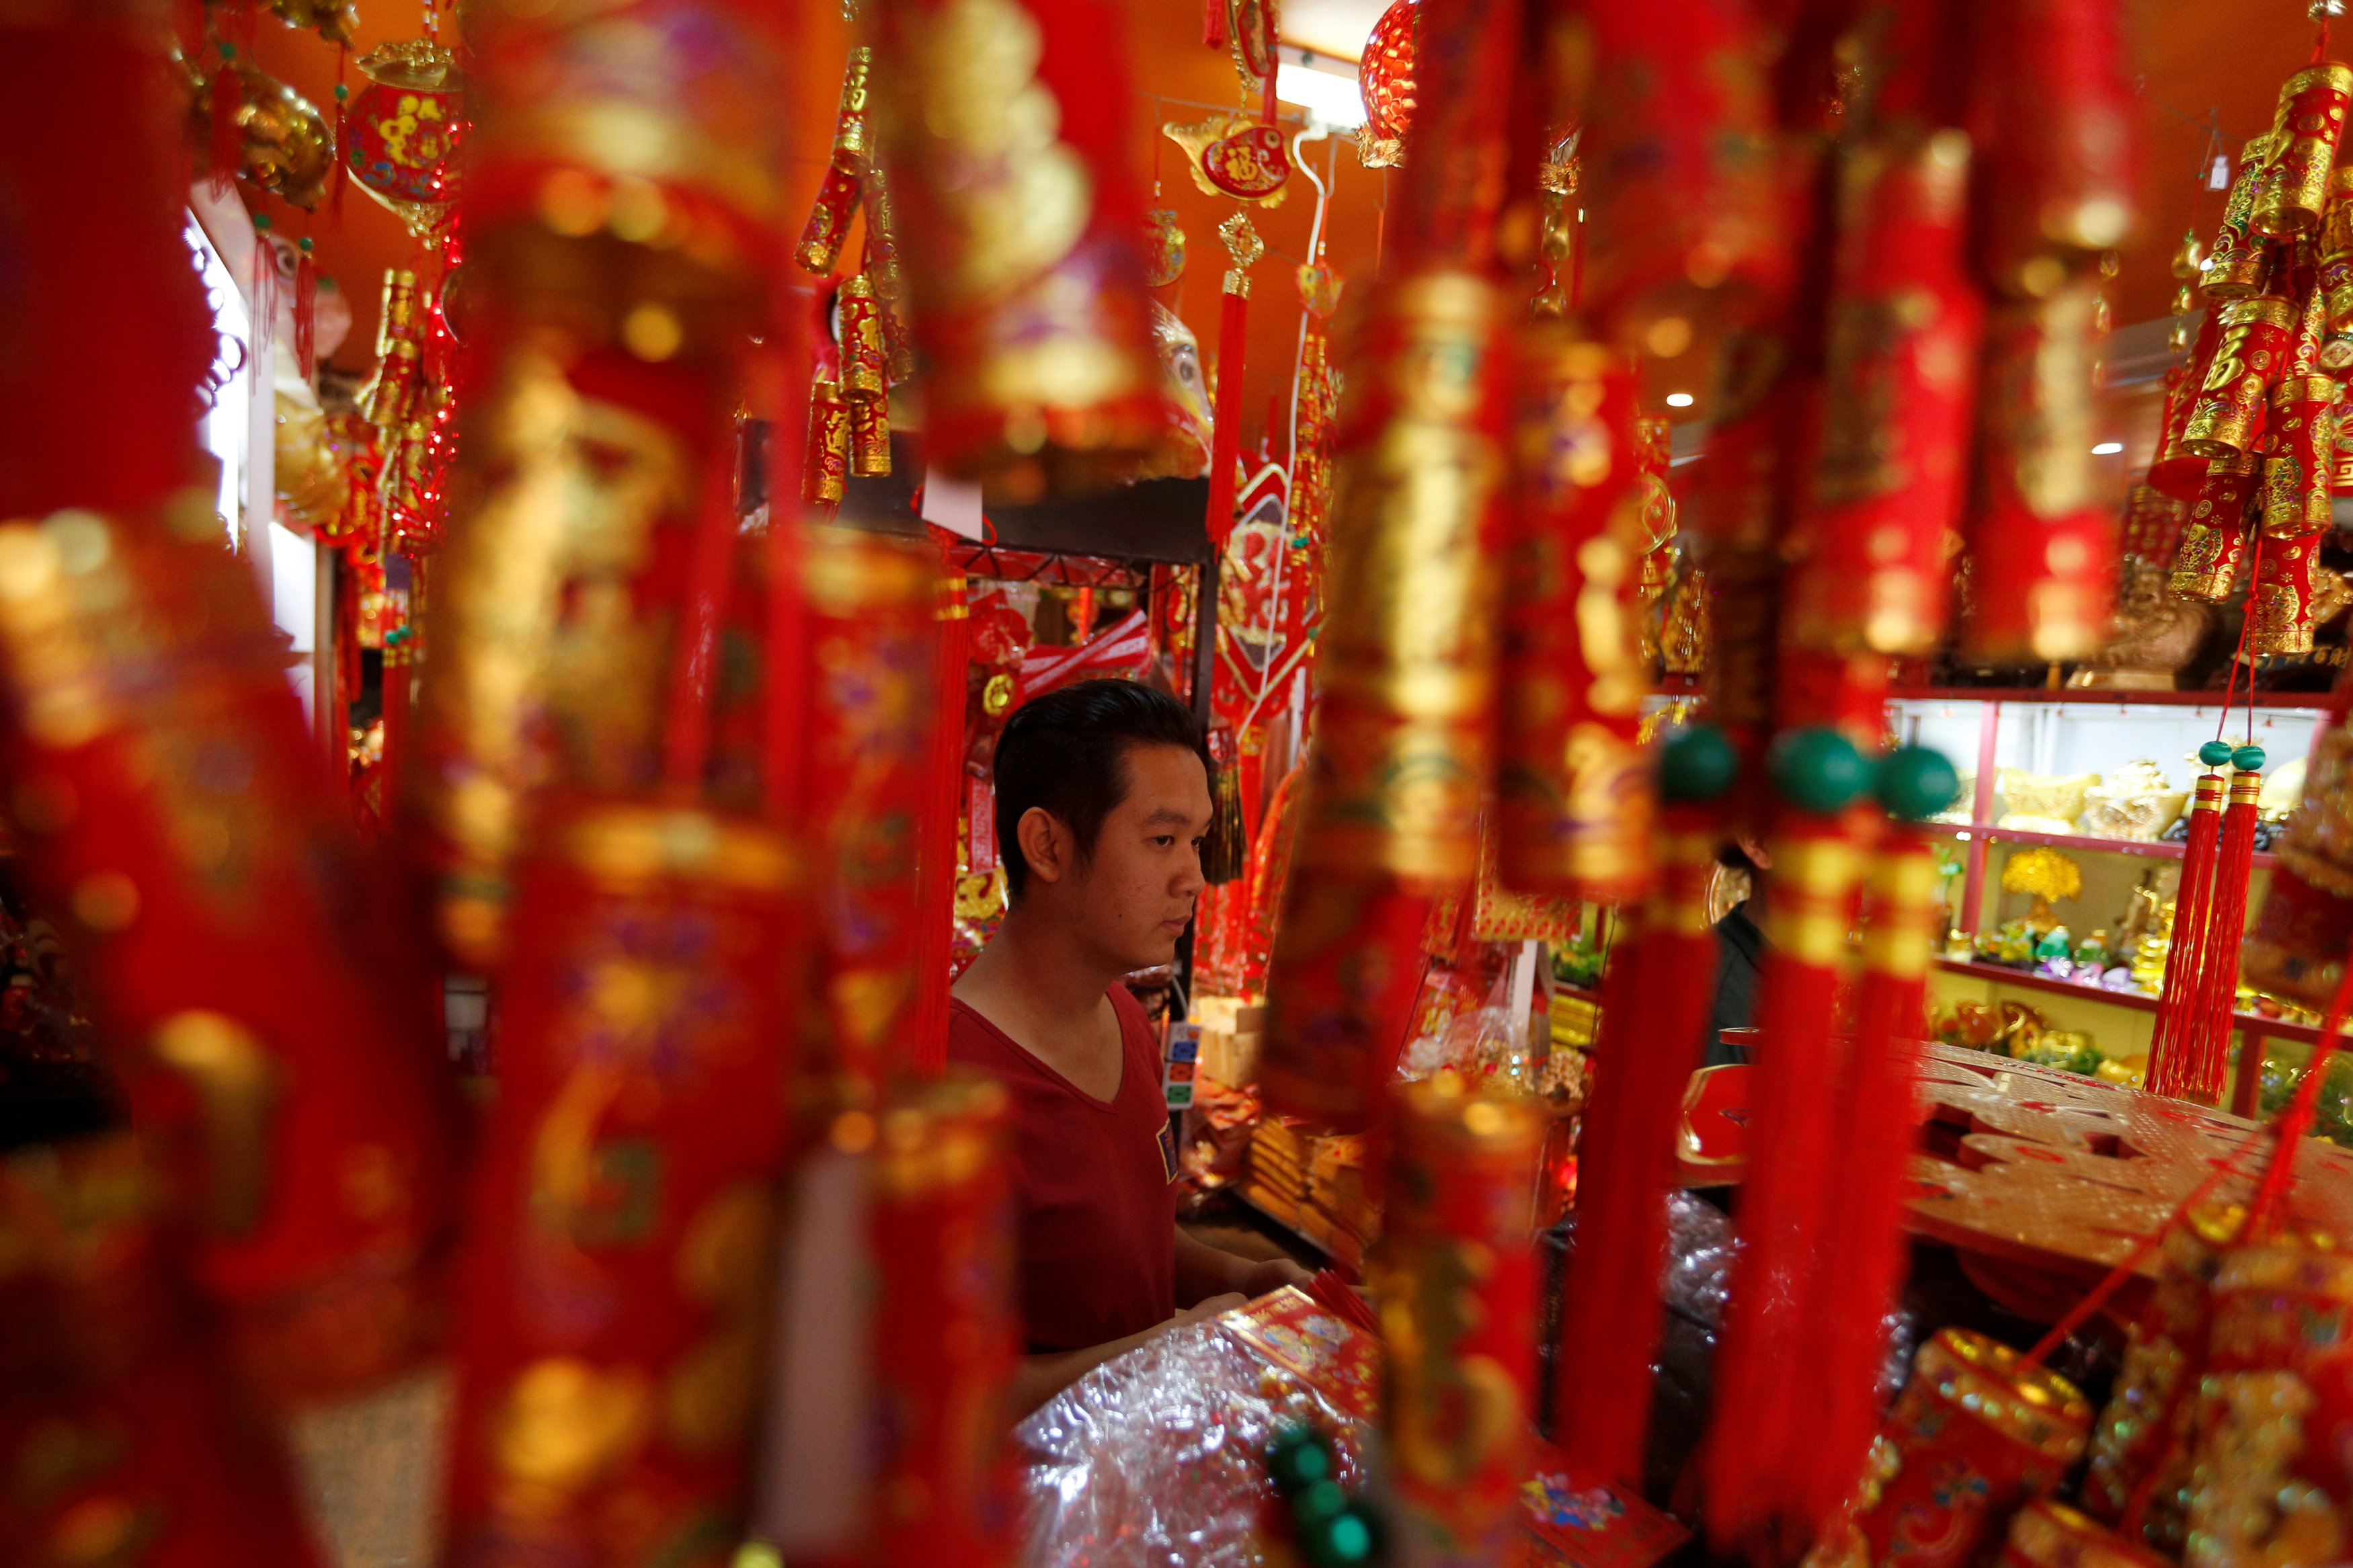 محلات لبيع الزينة الخاصة باحتفالات السنة الصينية الجديدة فى كمبوديا